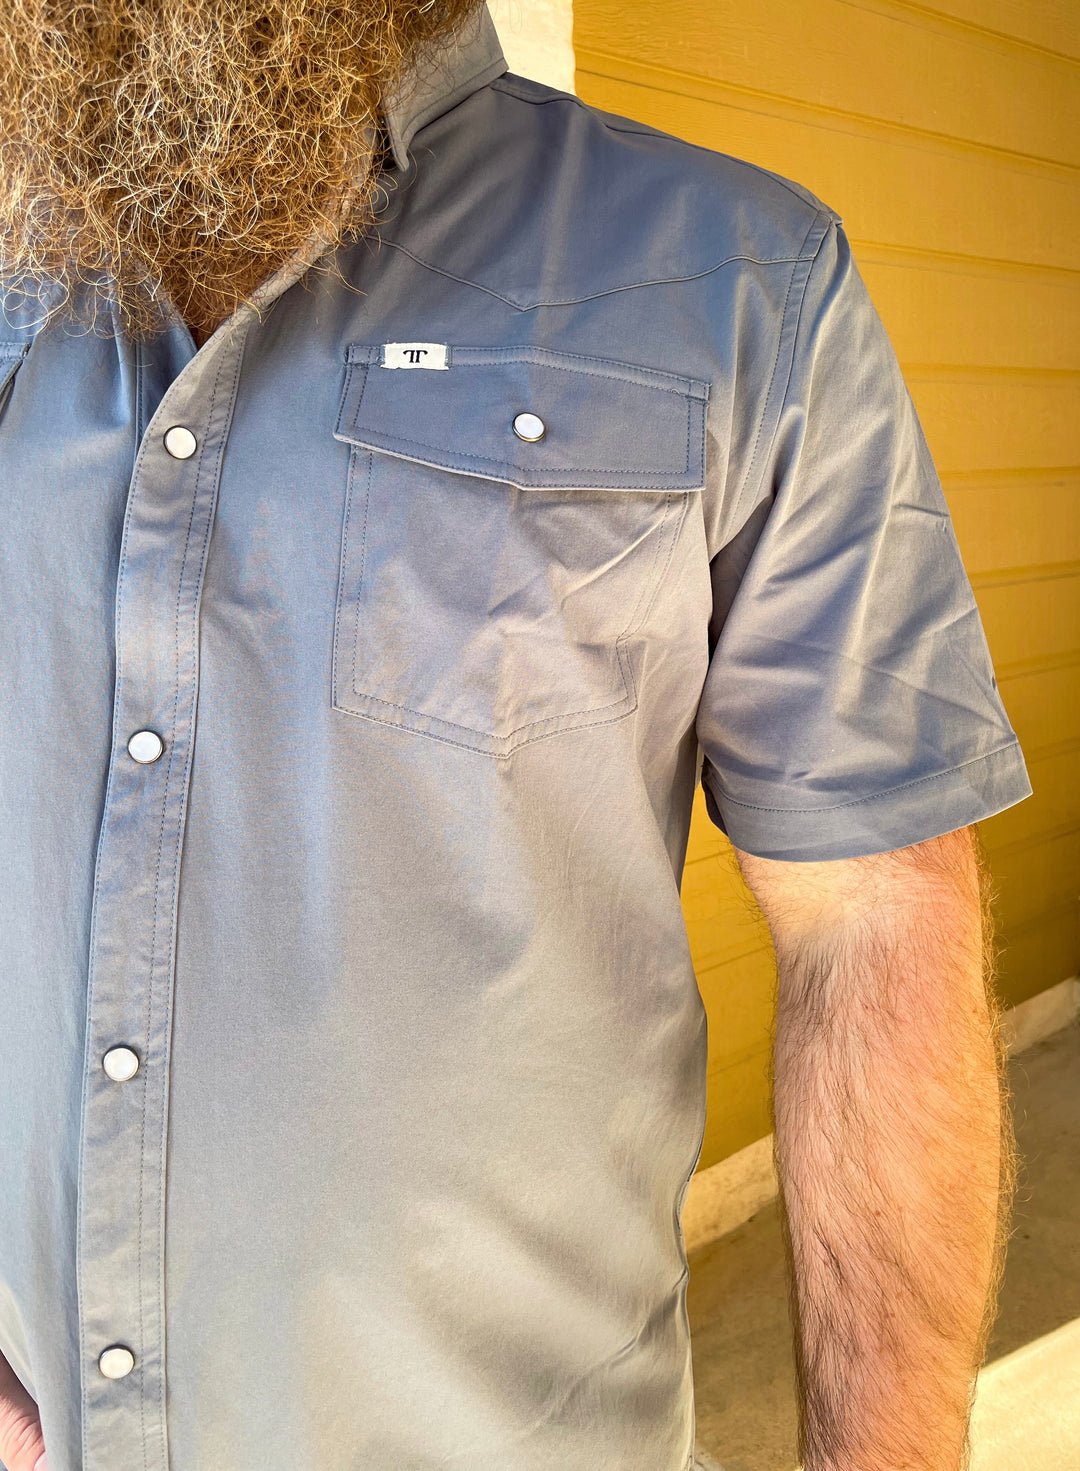 The Ferrell Core Short Sleeve Snap Shirt